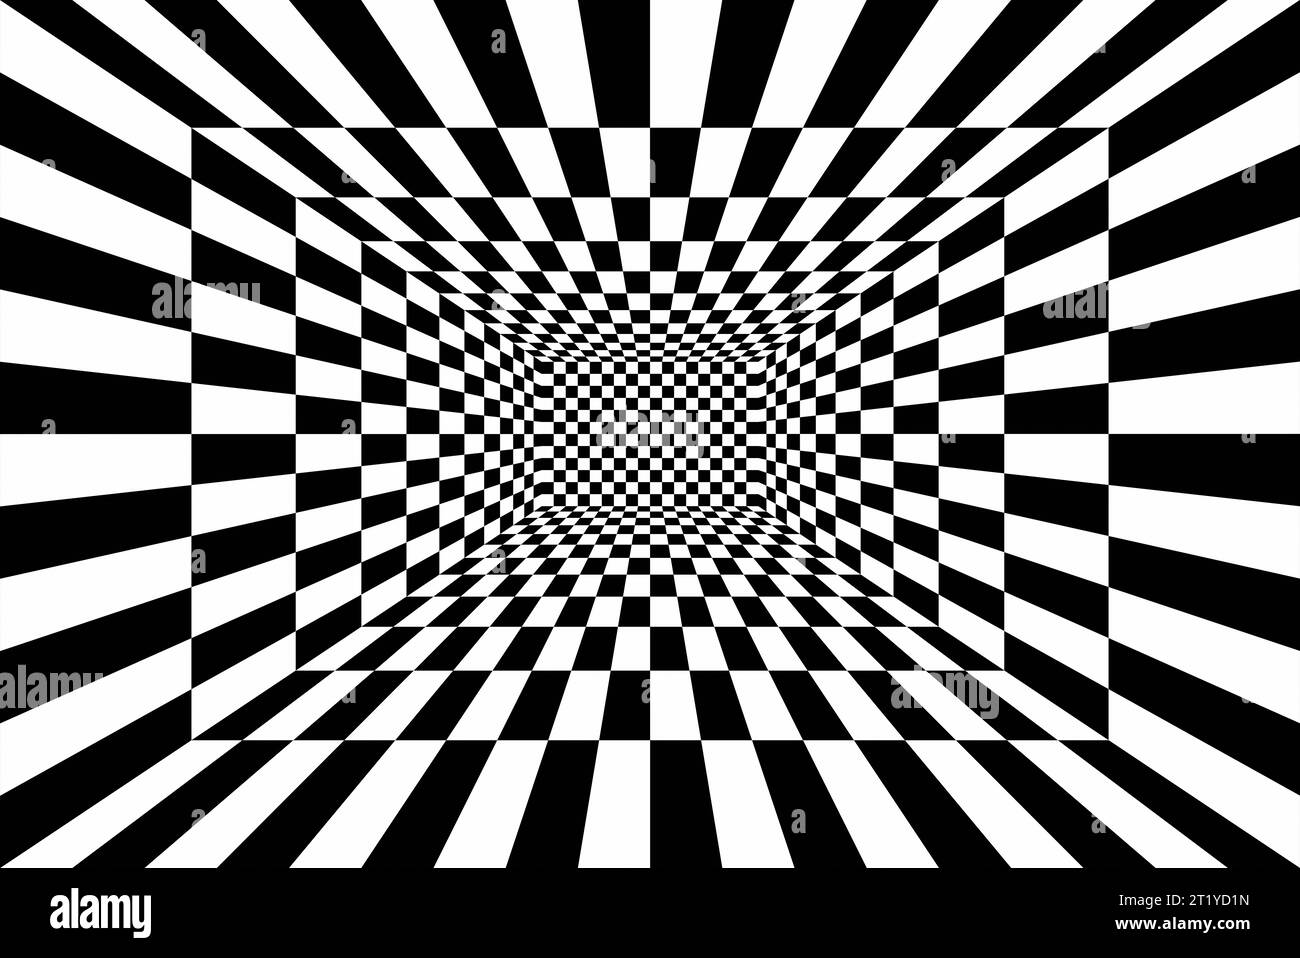 Hintergrund mit hypnotischem Effekt in Schwarz-weiß-Schachbrettmuster. Stockfoto